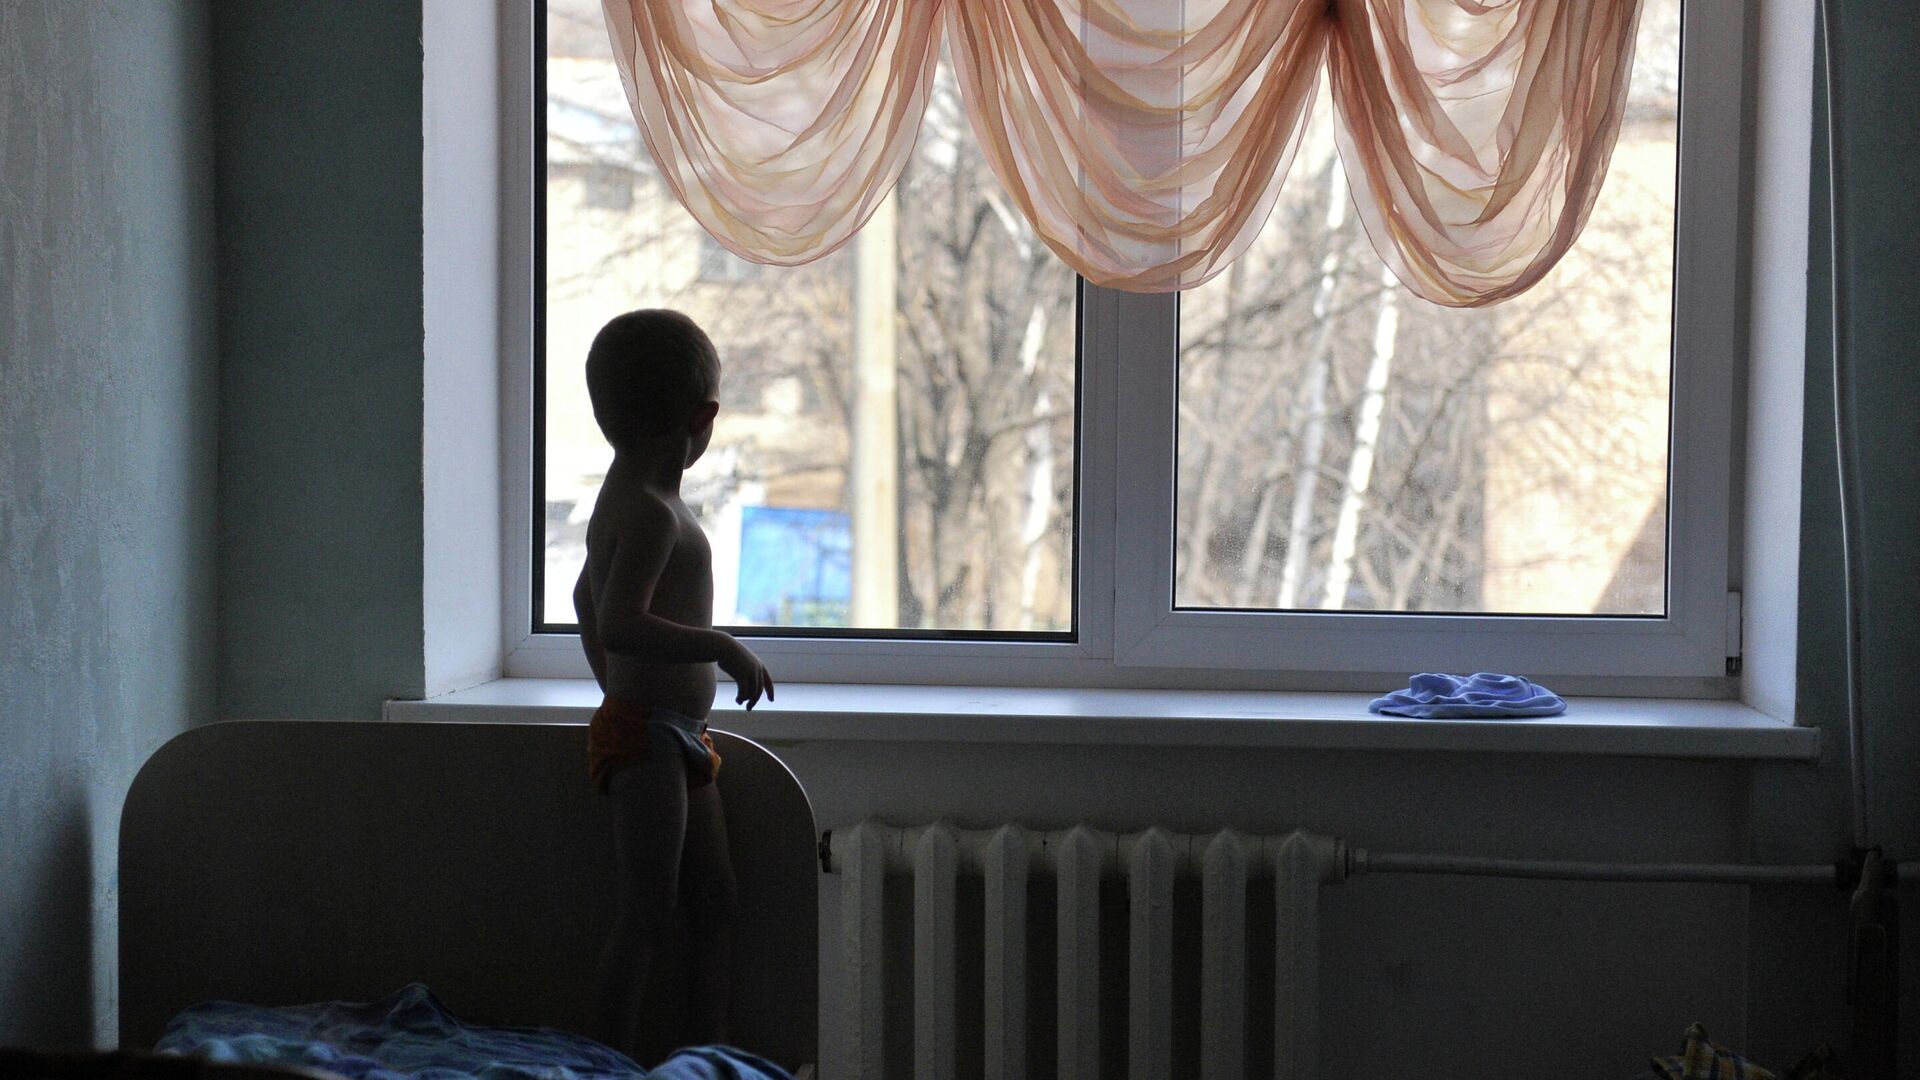 Ребенок смотрит в окно - РИА Новости, 1920, 29.05.2020